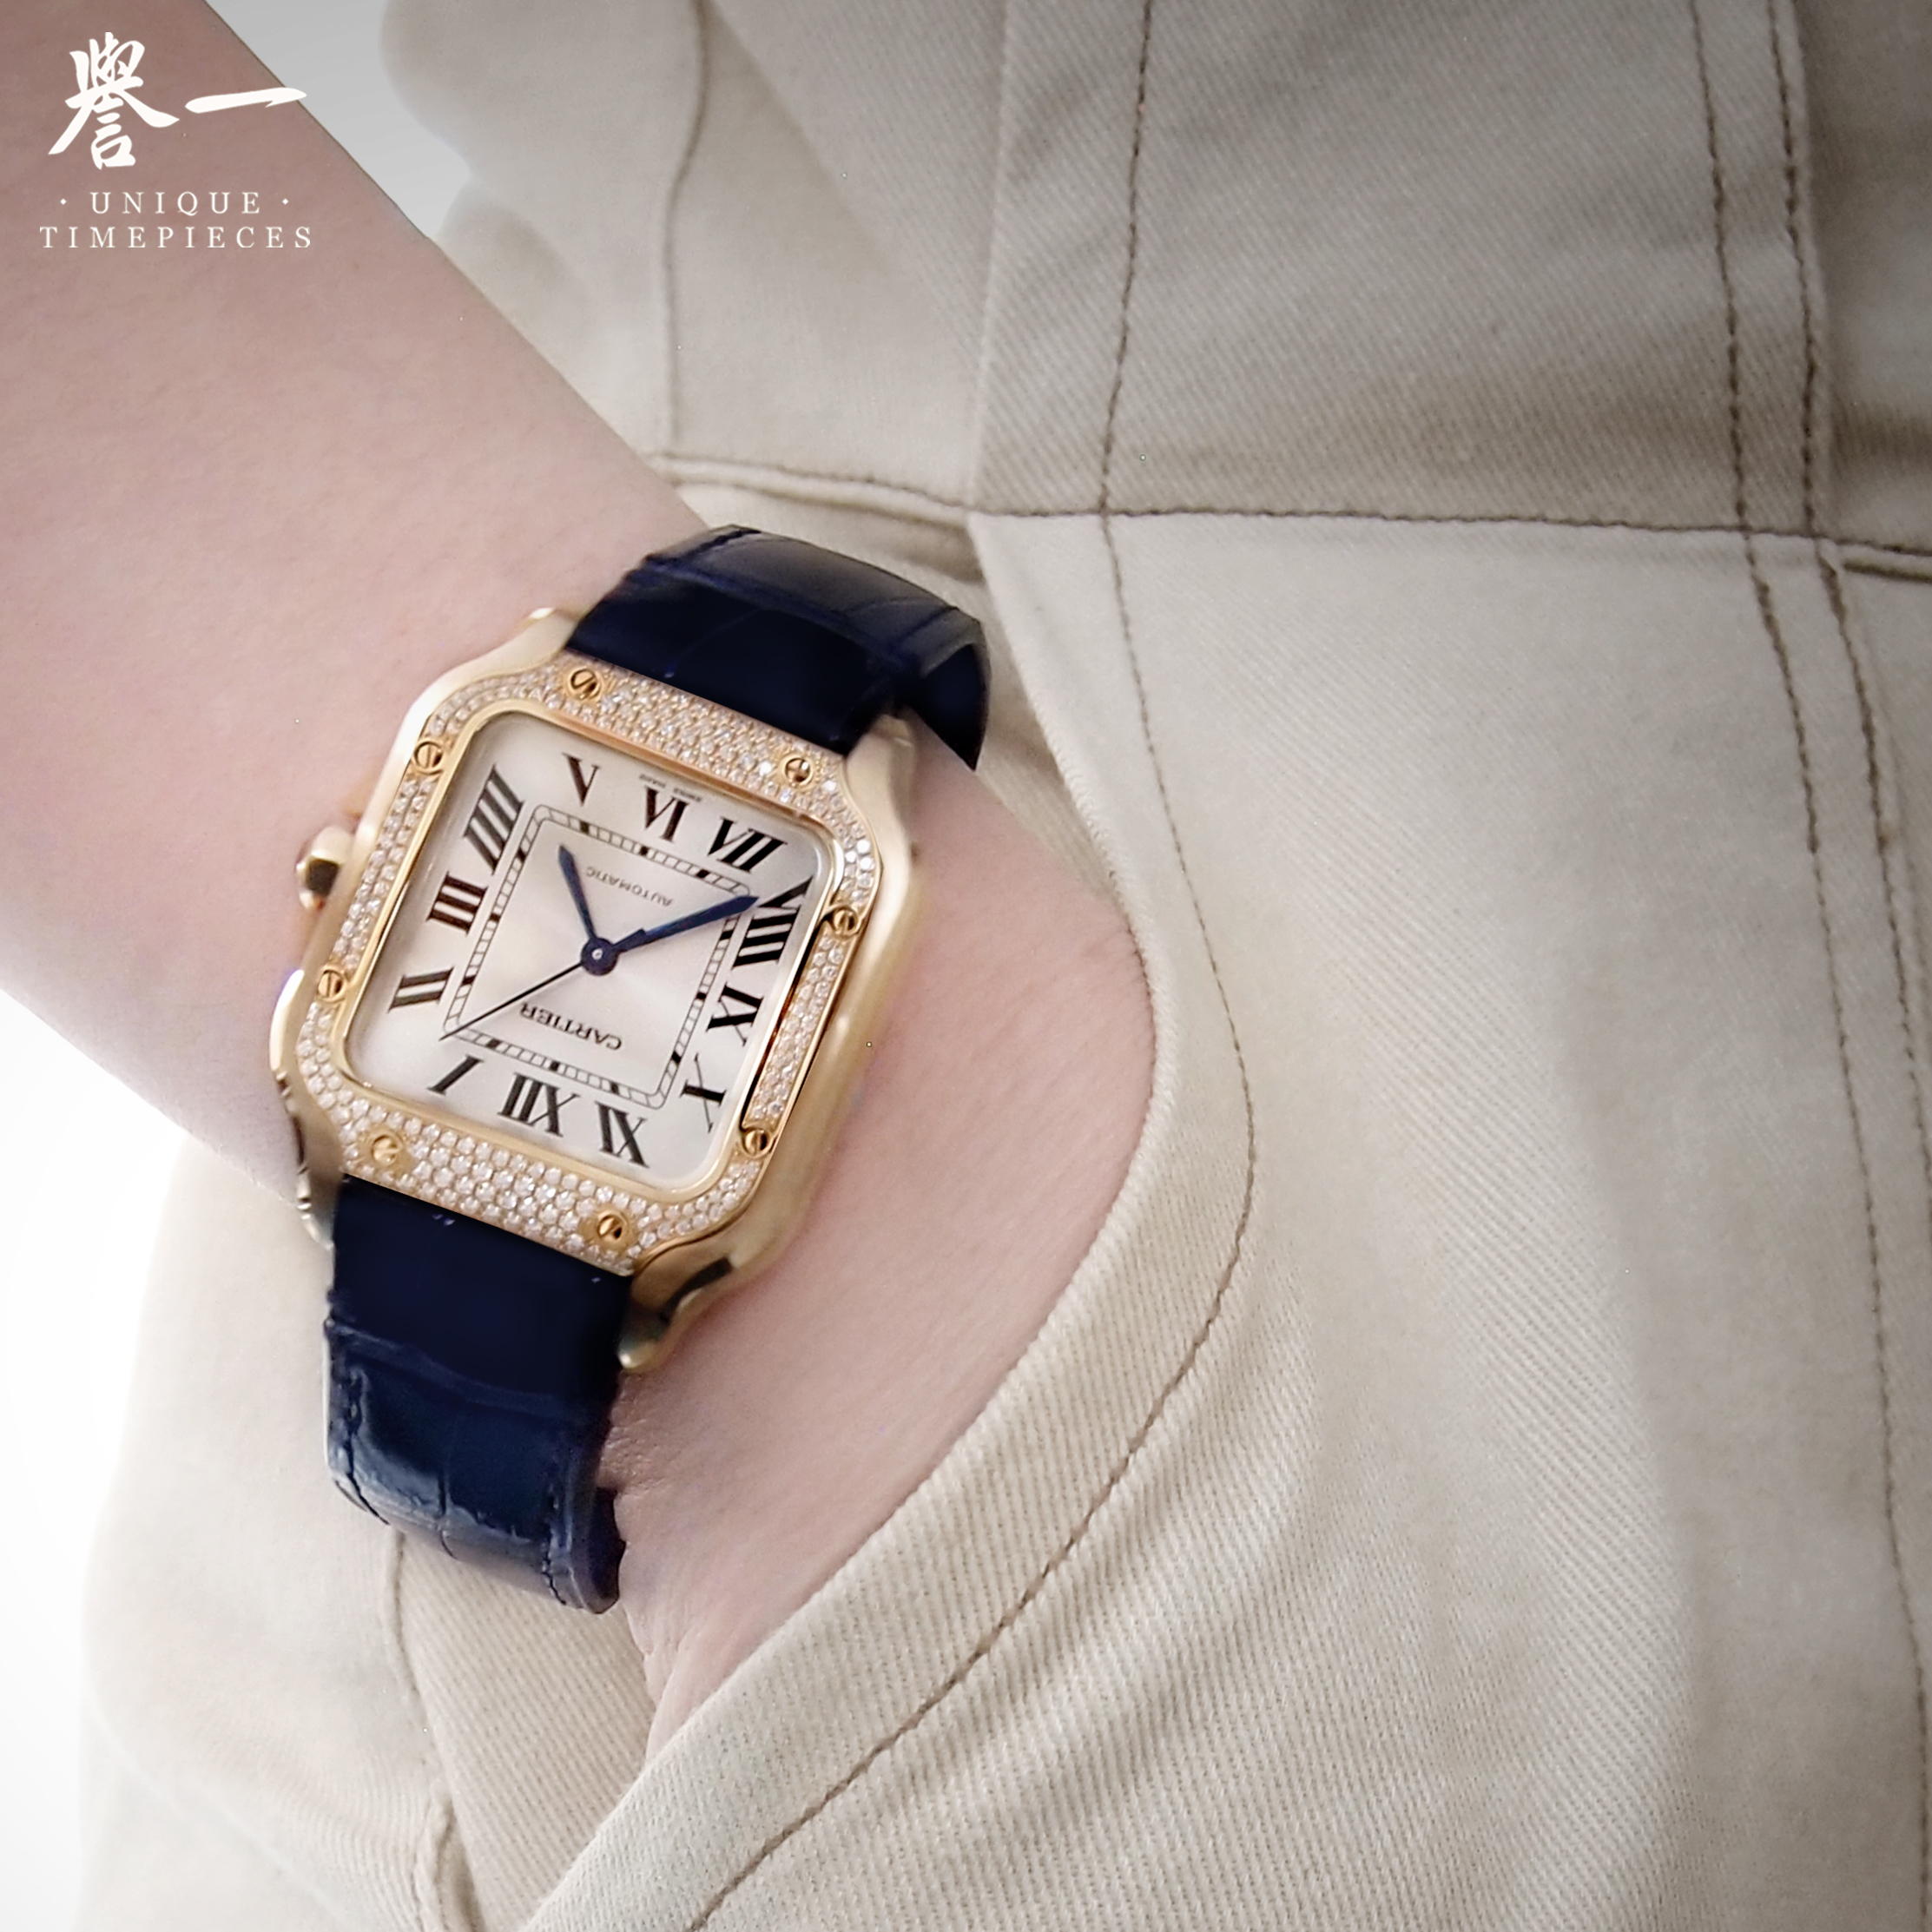 Santos de Cartier – the brilliant iconic watch